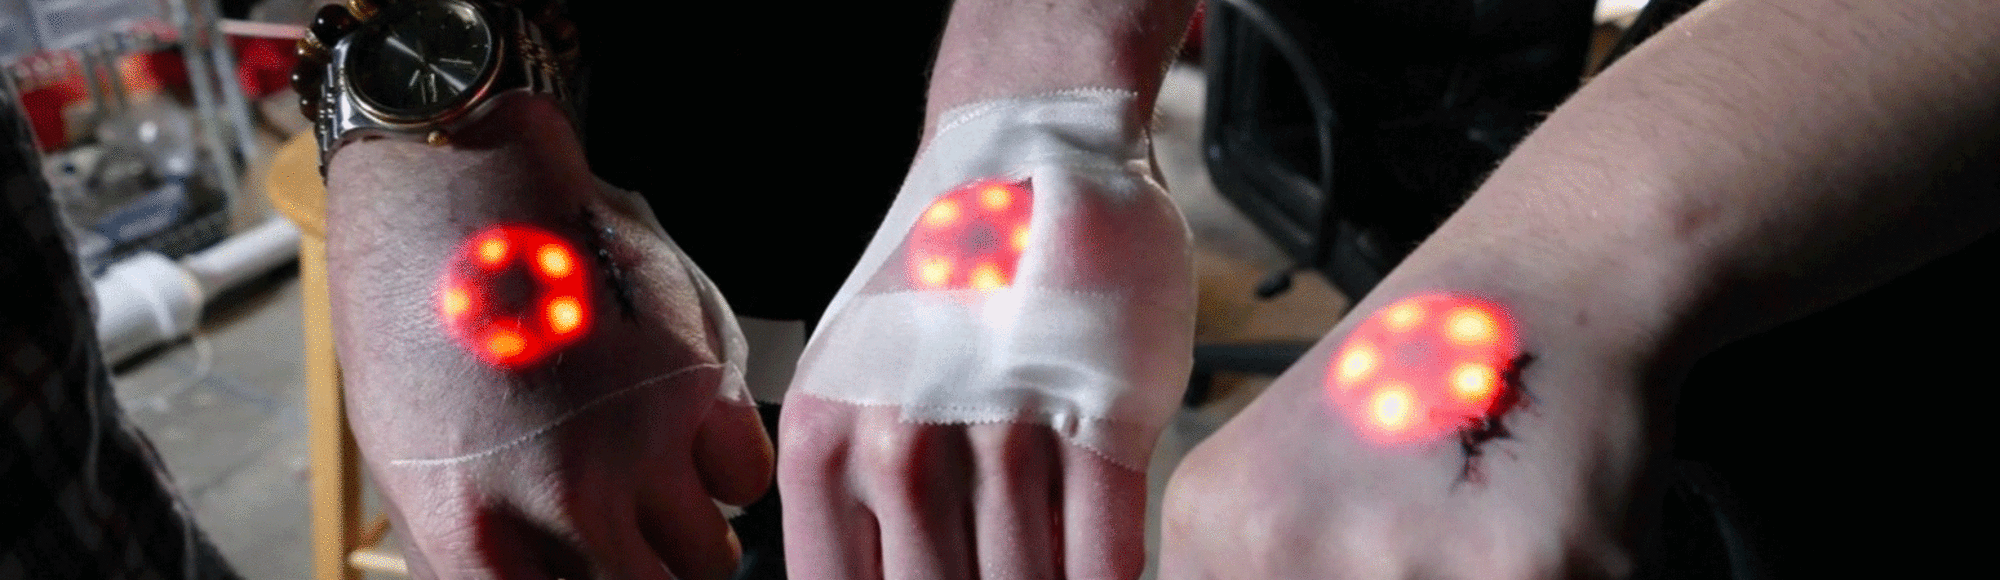 Estos biohackers se implantaron luces LED en el brazo